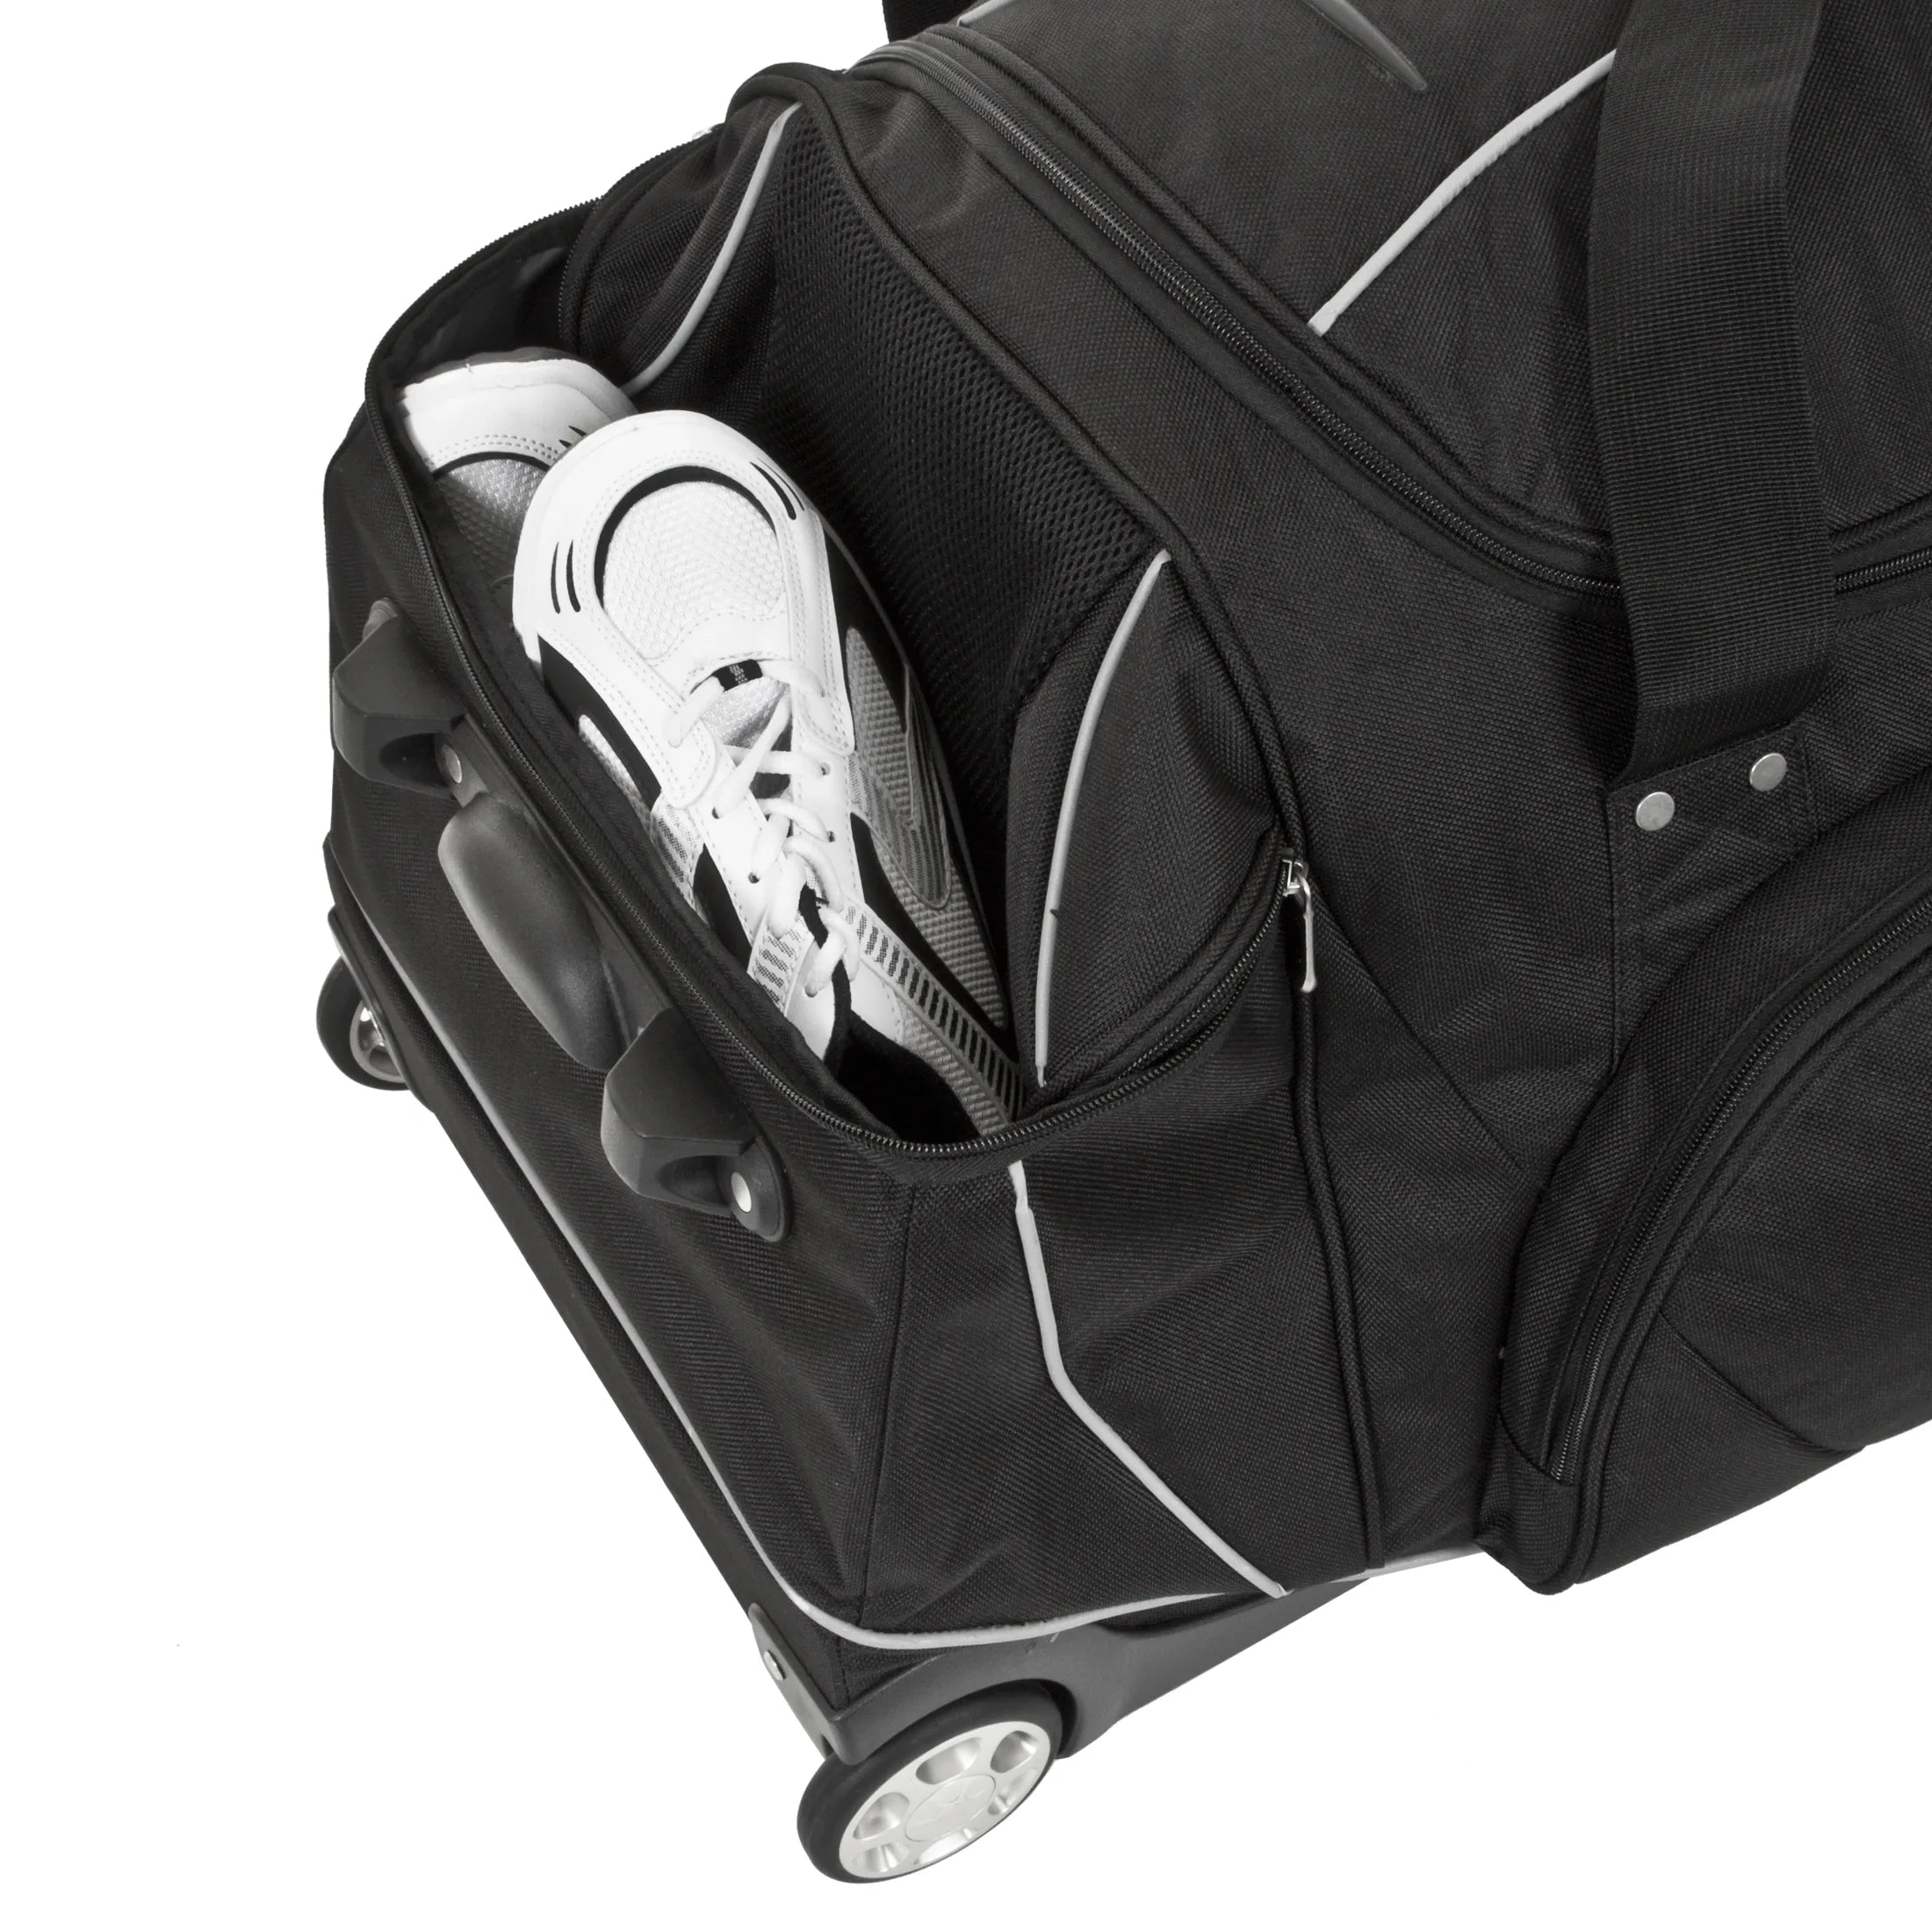 Dermata travel roller travel bag with backpack function 96 cm - black